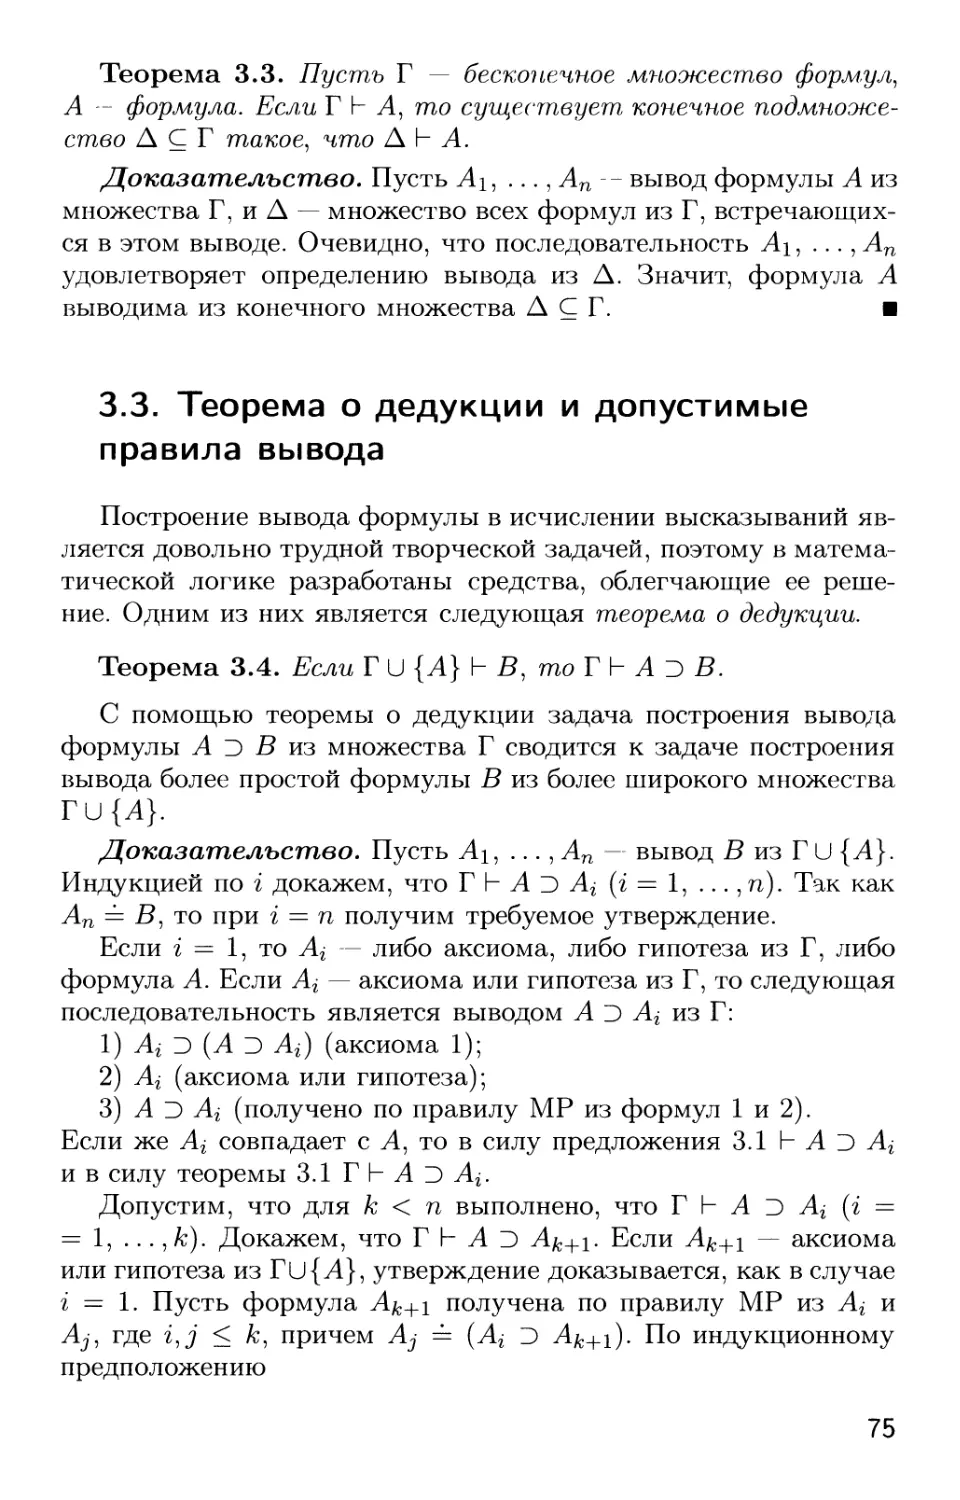 3.3. Теорема о дедукции и допустимые правила вывода